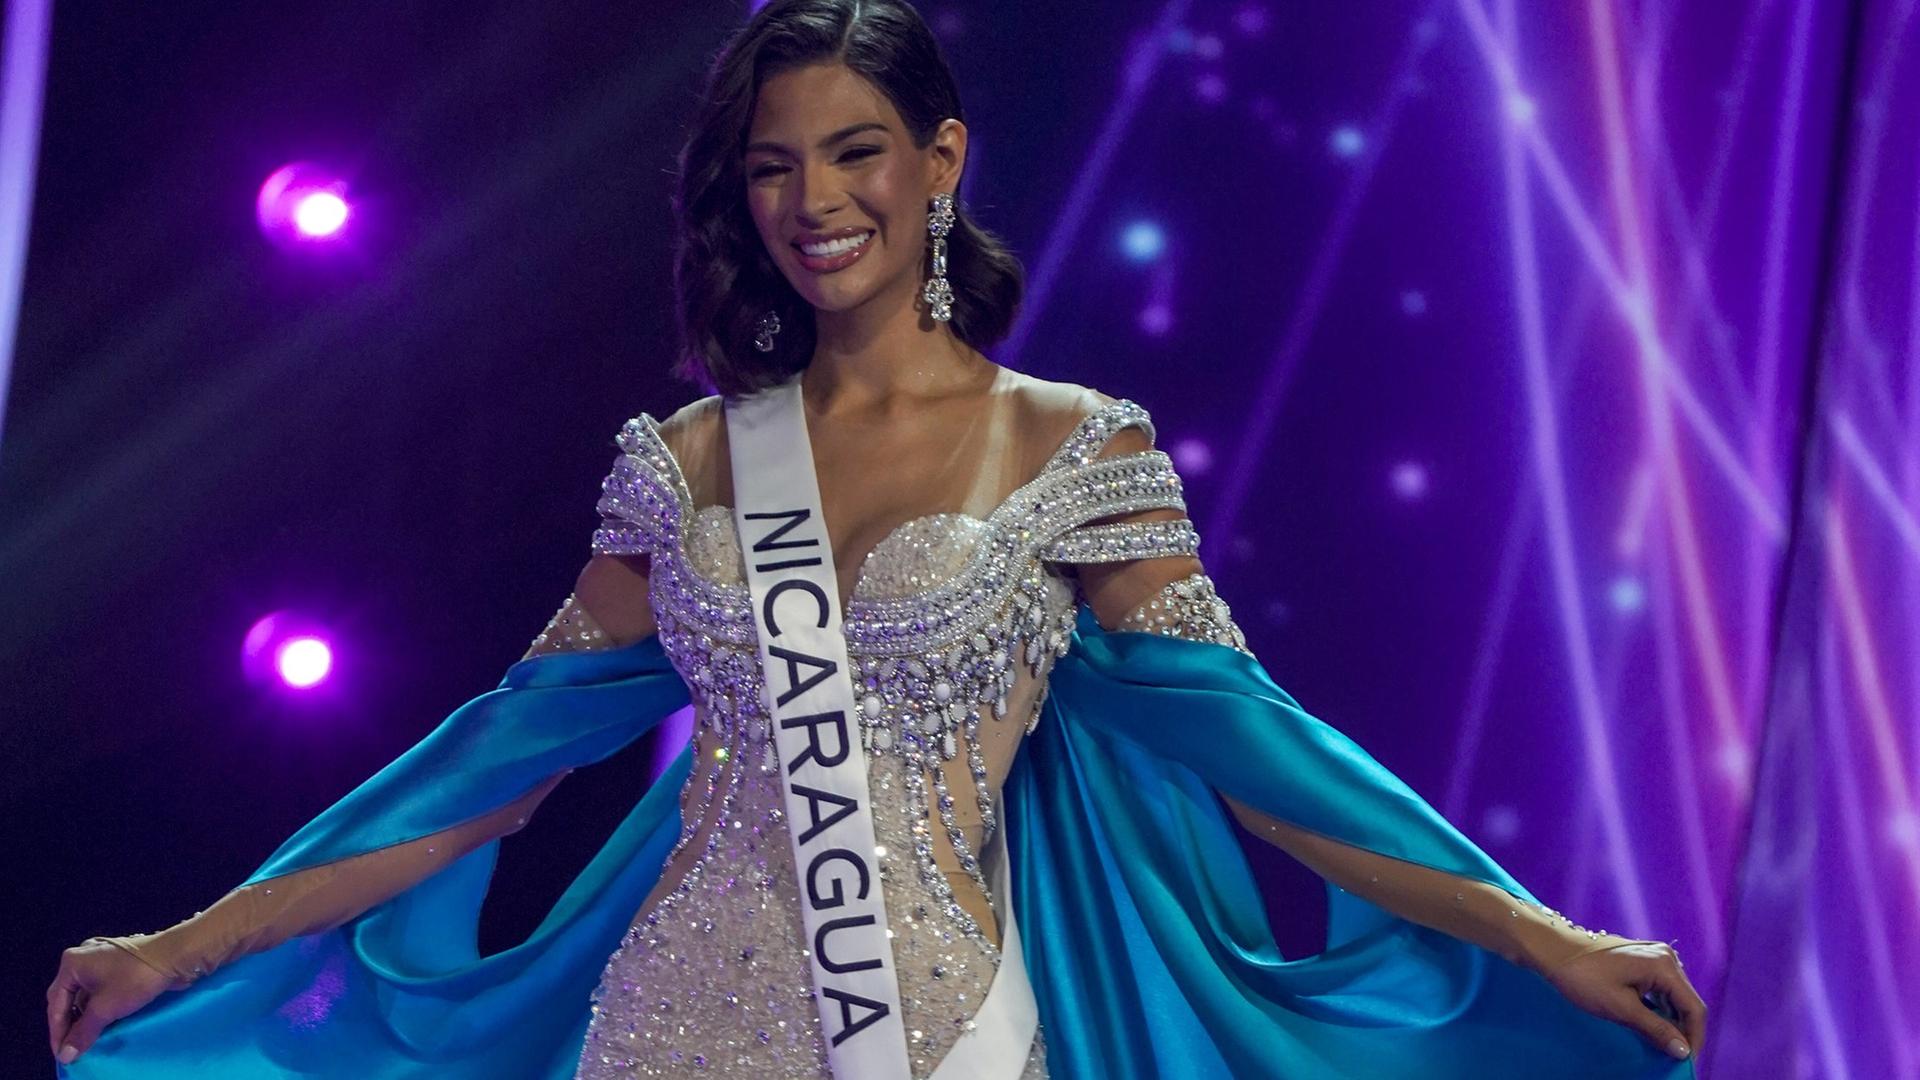 Sheynnis Palacios in einem weißen Kleid mit blauem Umhang, auf ihrer Schärpe steht der Schriftzug "Nicaragua".